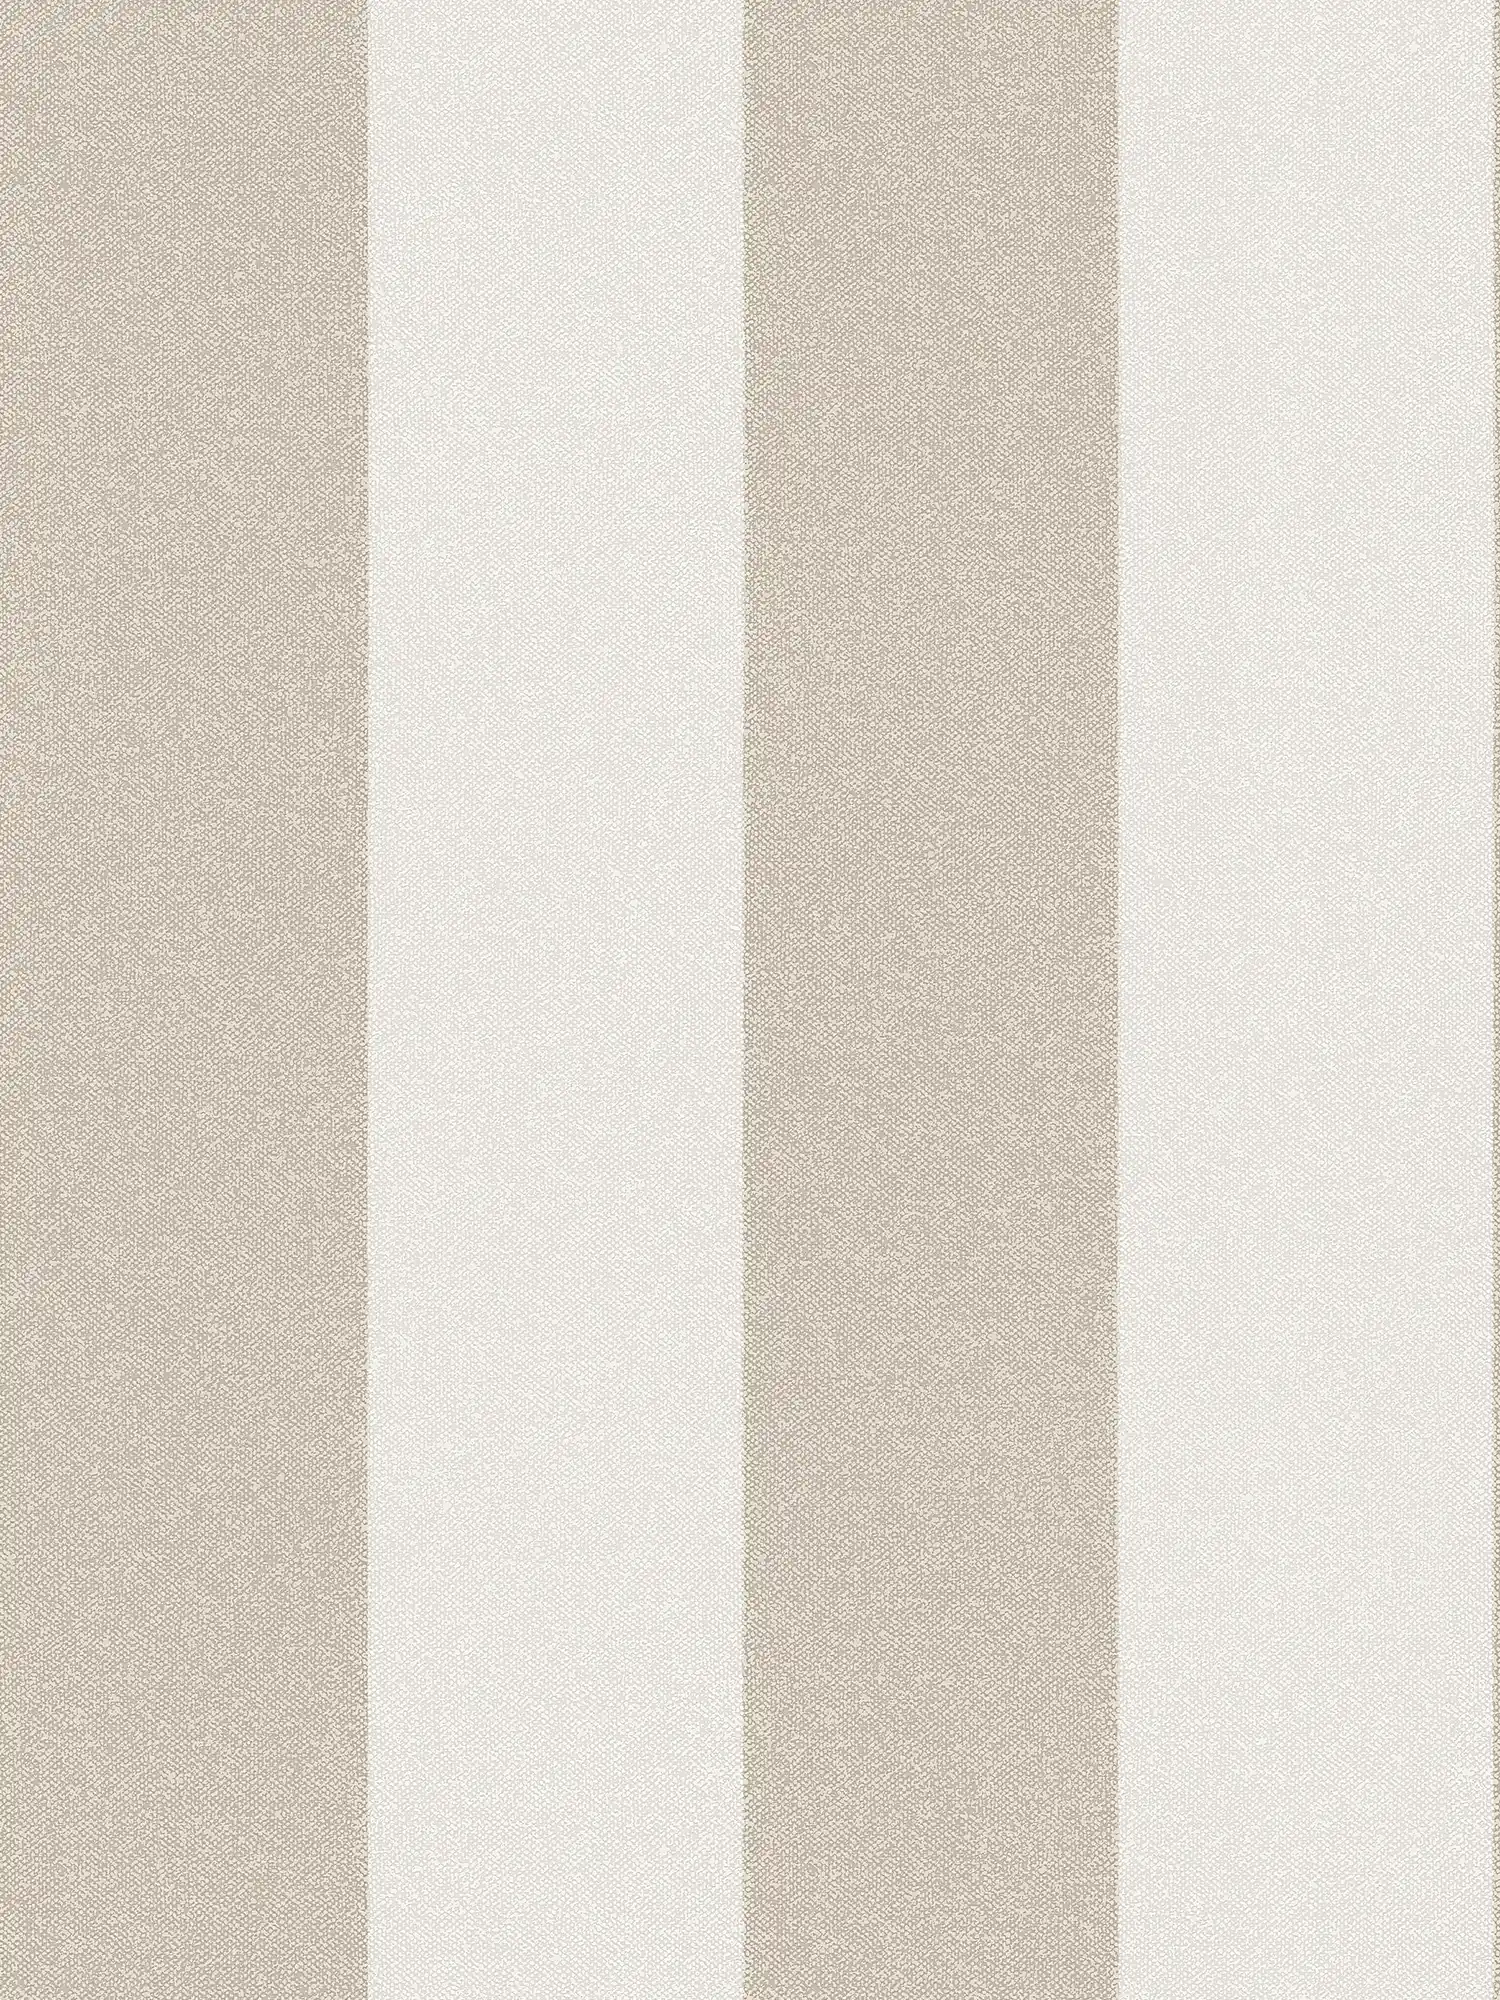 Carta da parati a righe a blocchi con effetto lino - marrone, crema, beige
